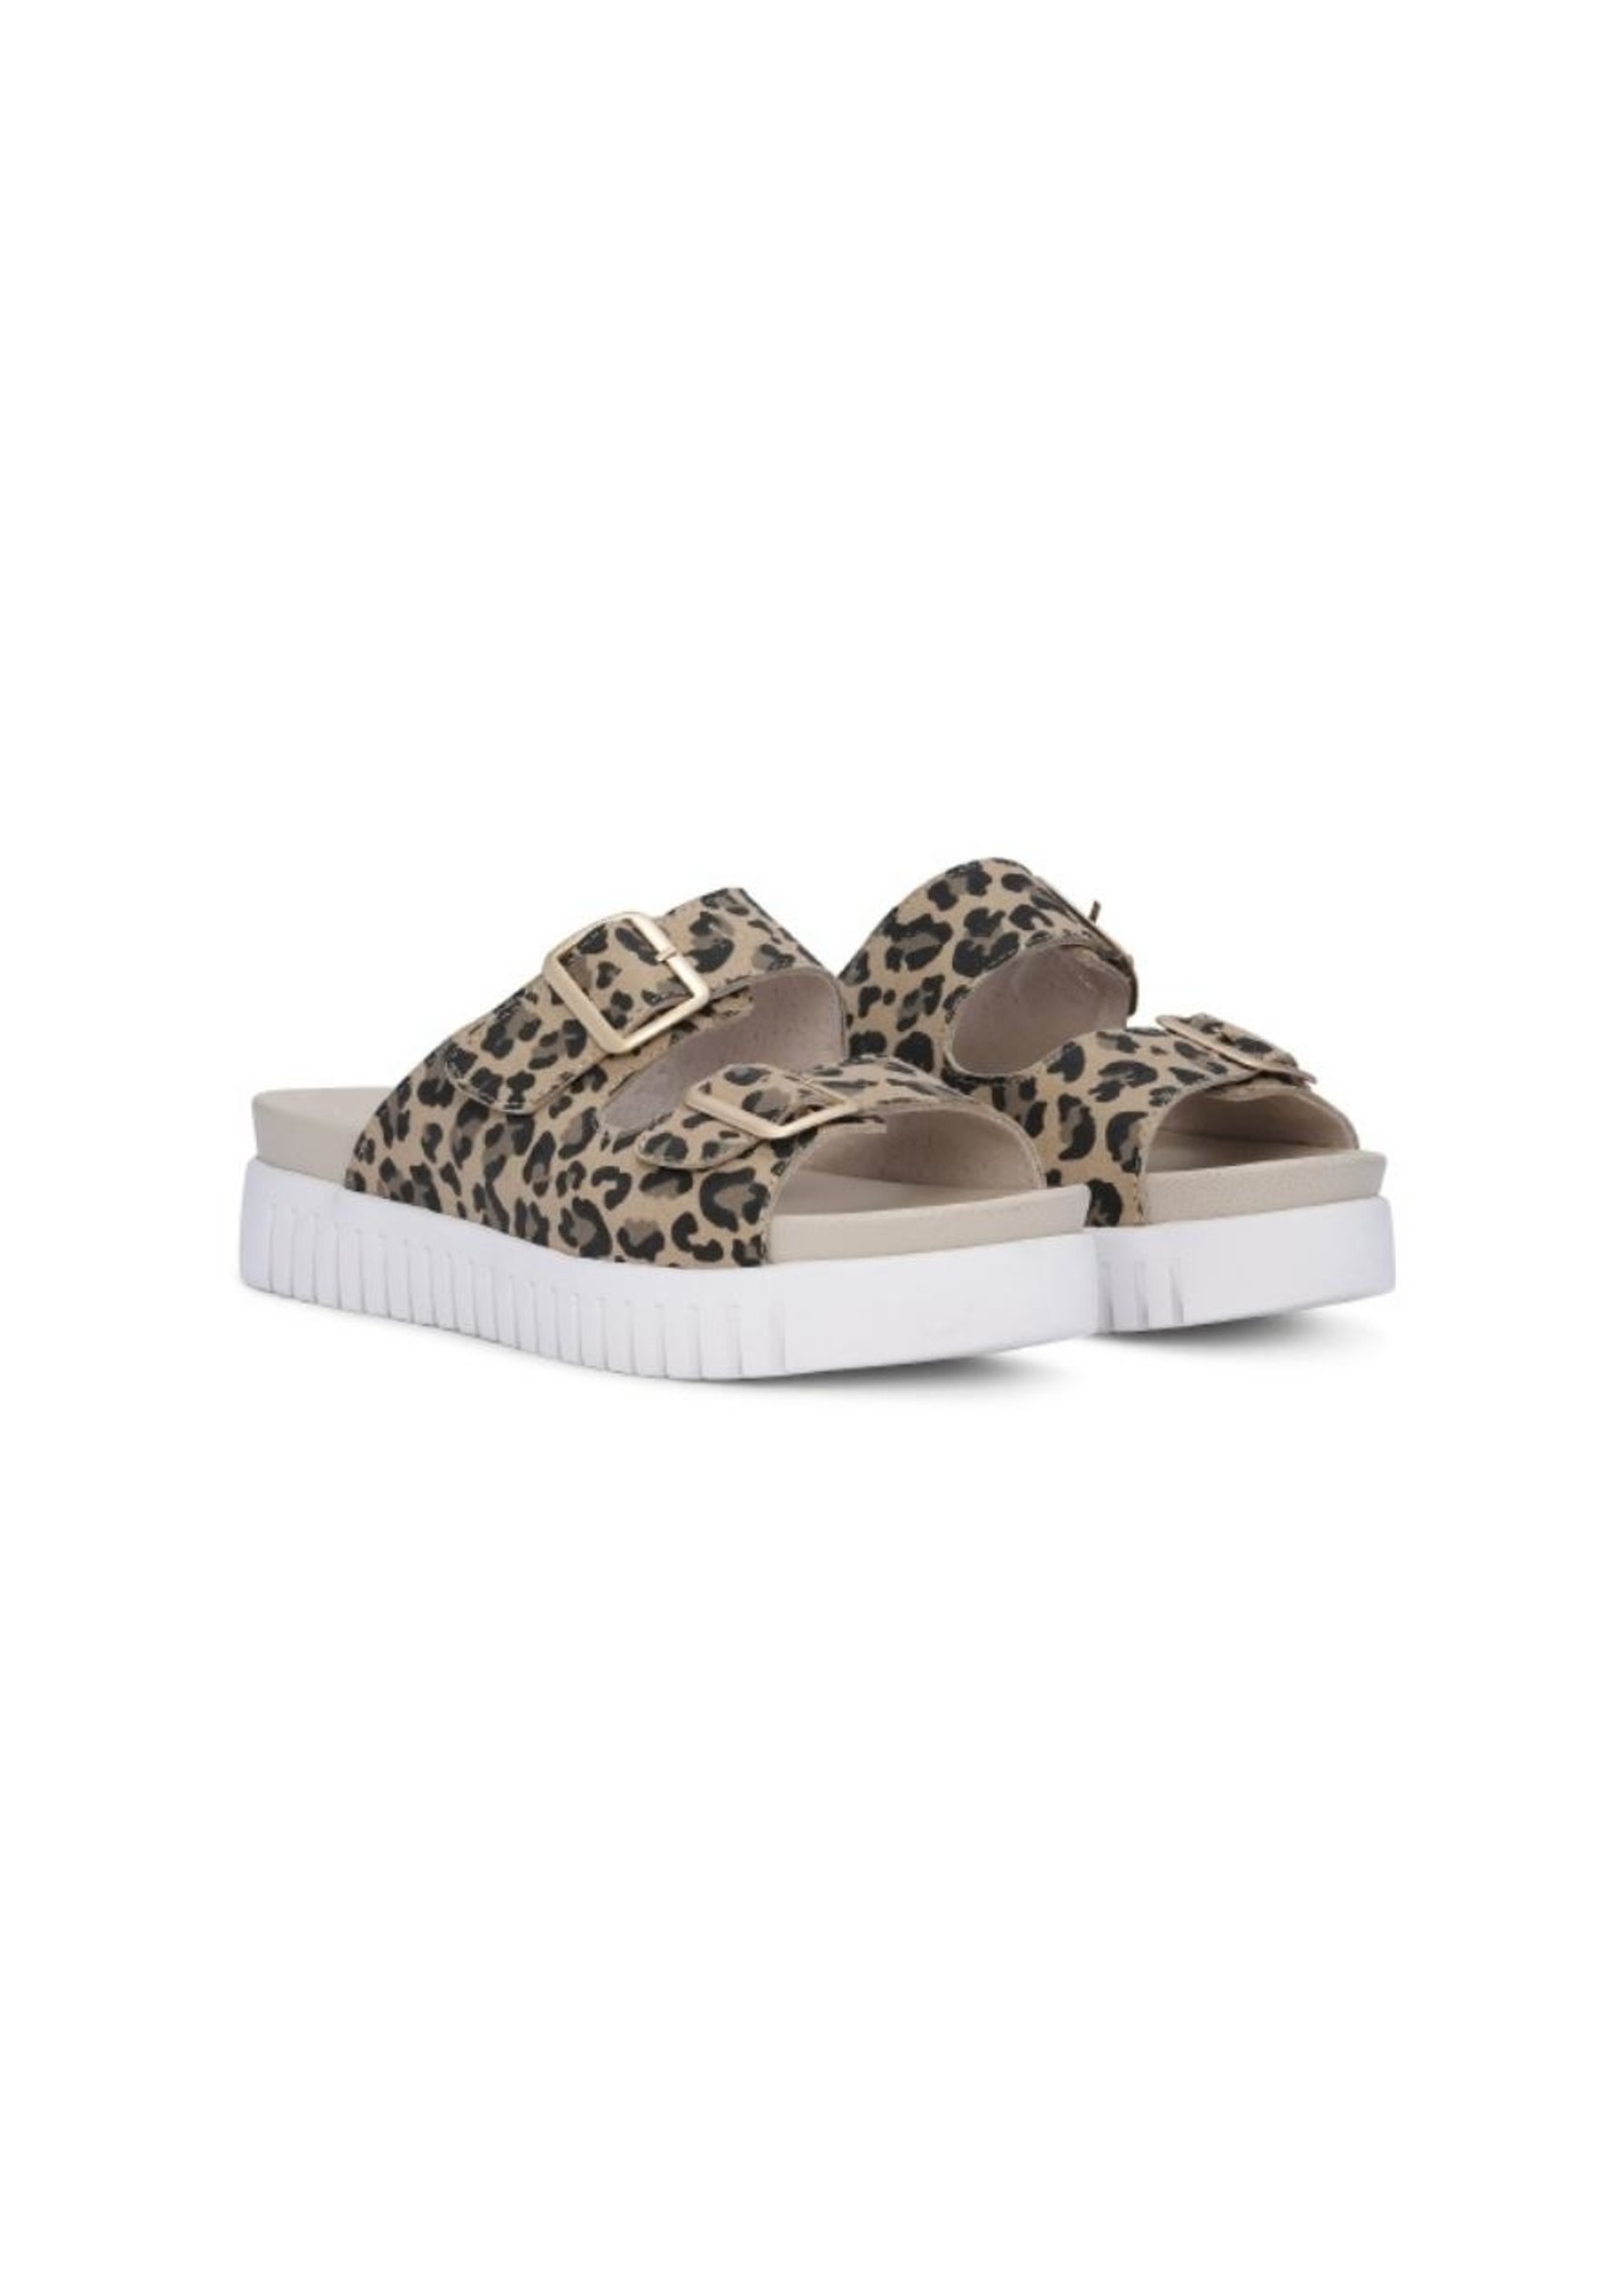 Ilse Jacobsen Leopard Sandals